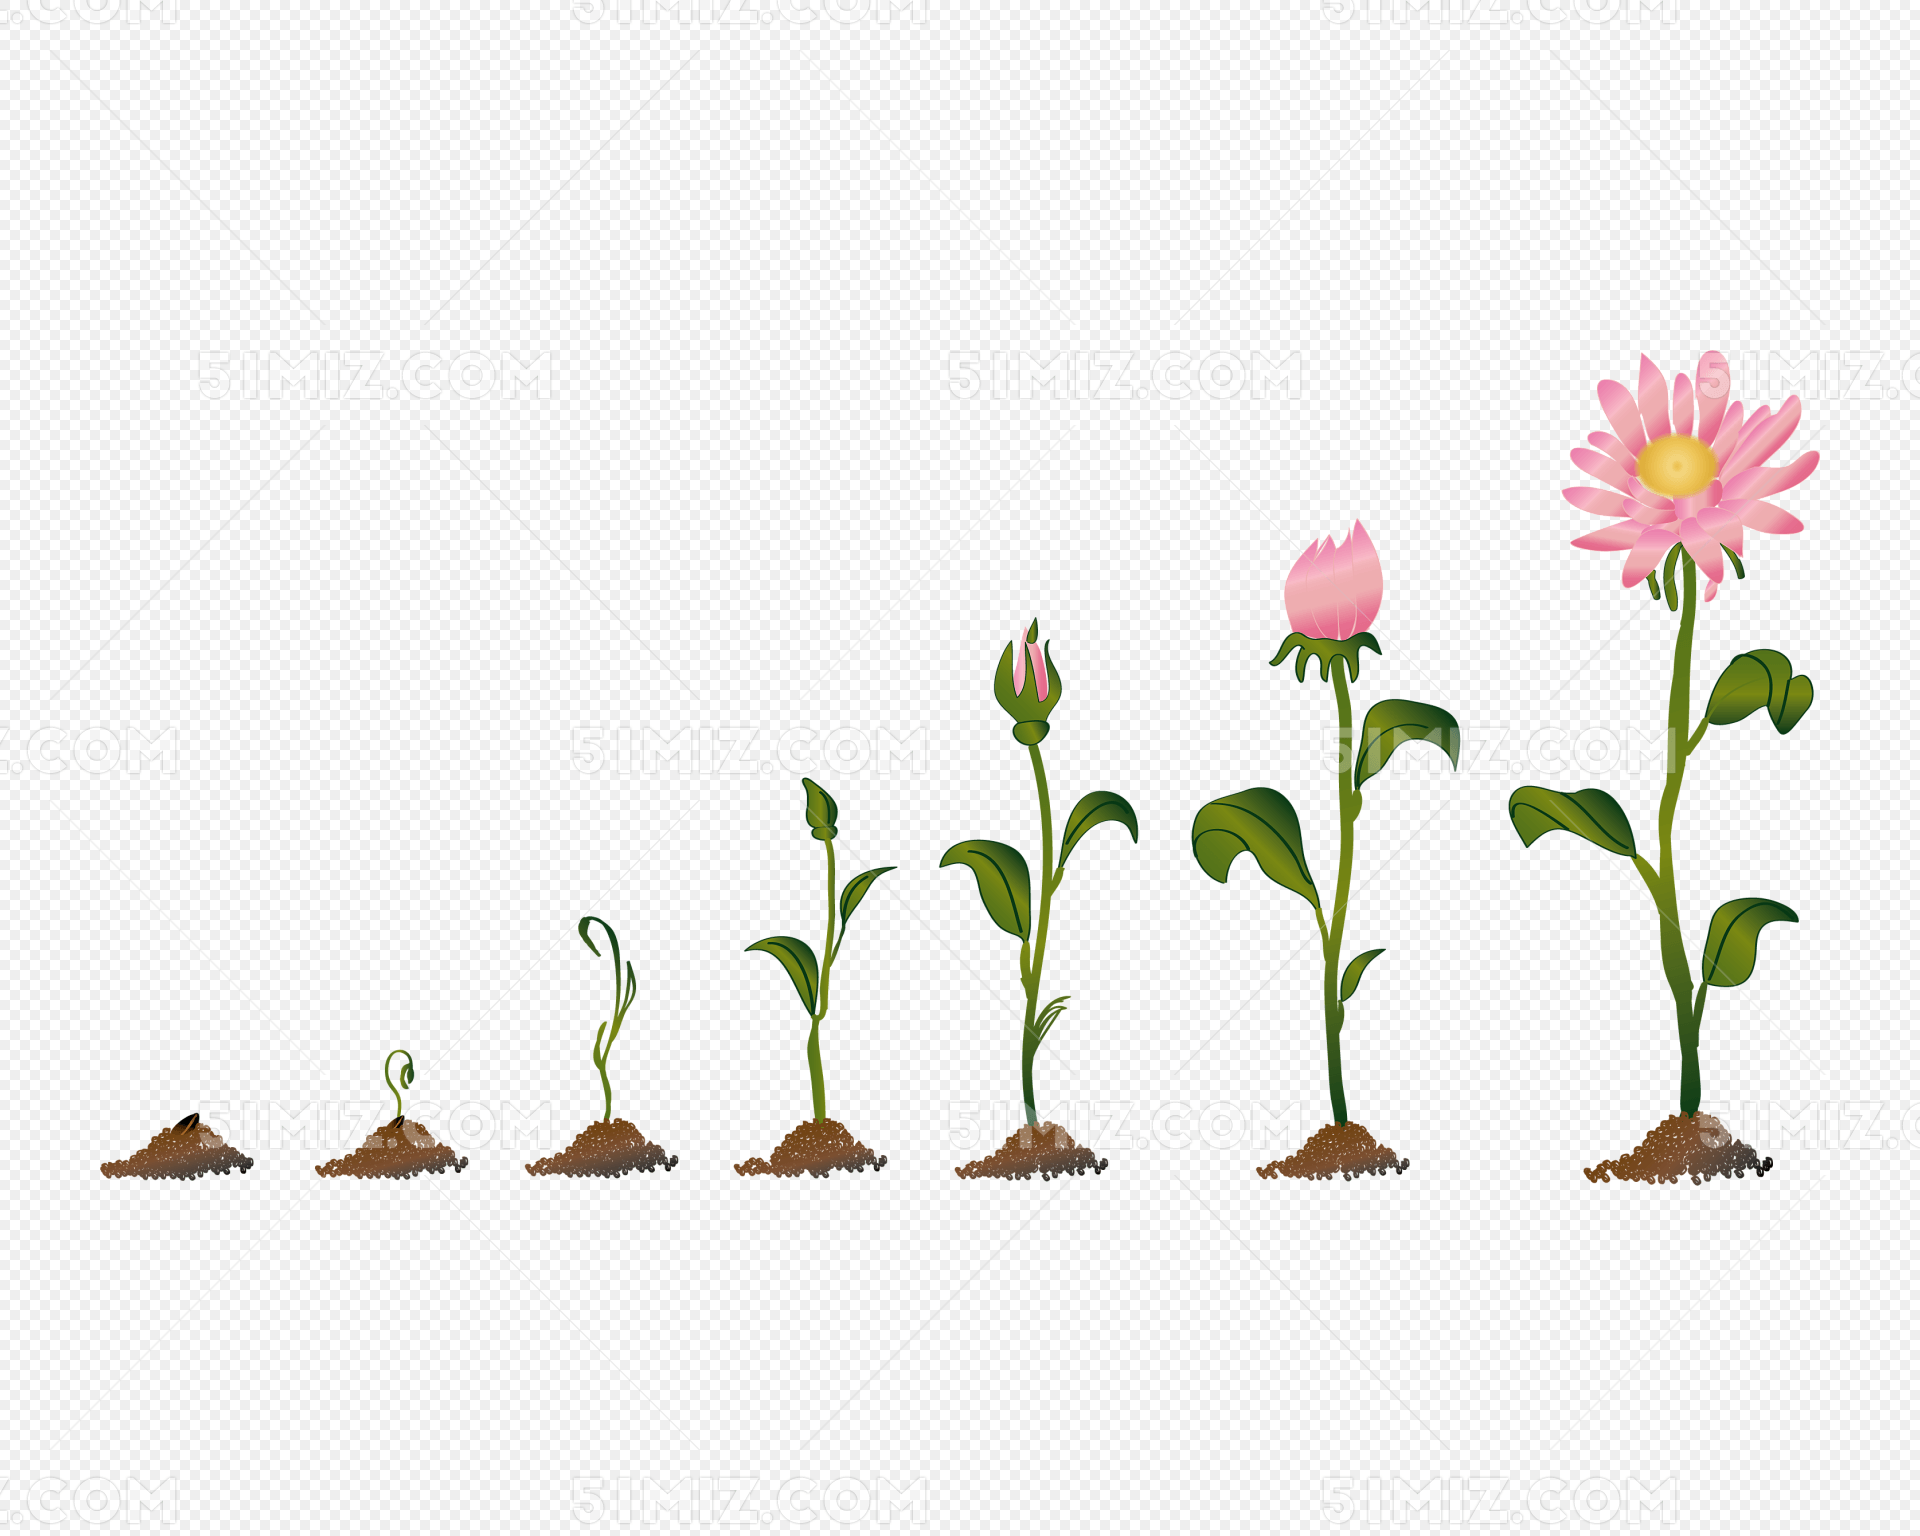 菊花的生长过程矢量素材太阳花粉色菊花